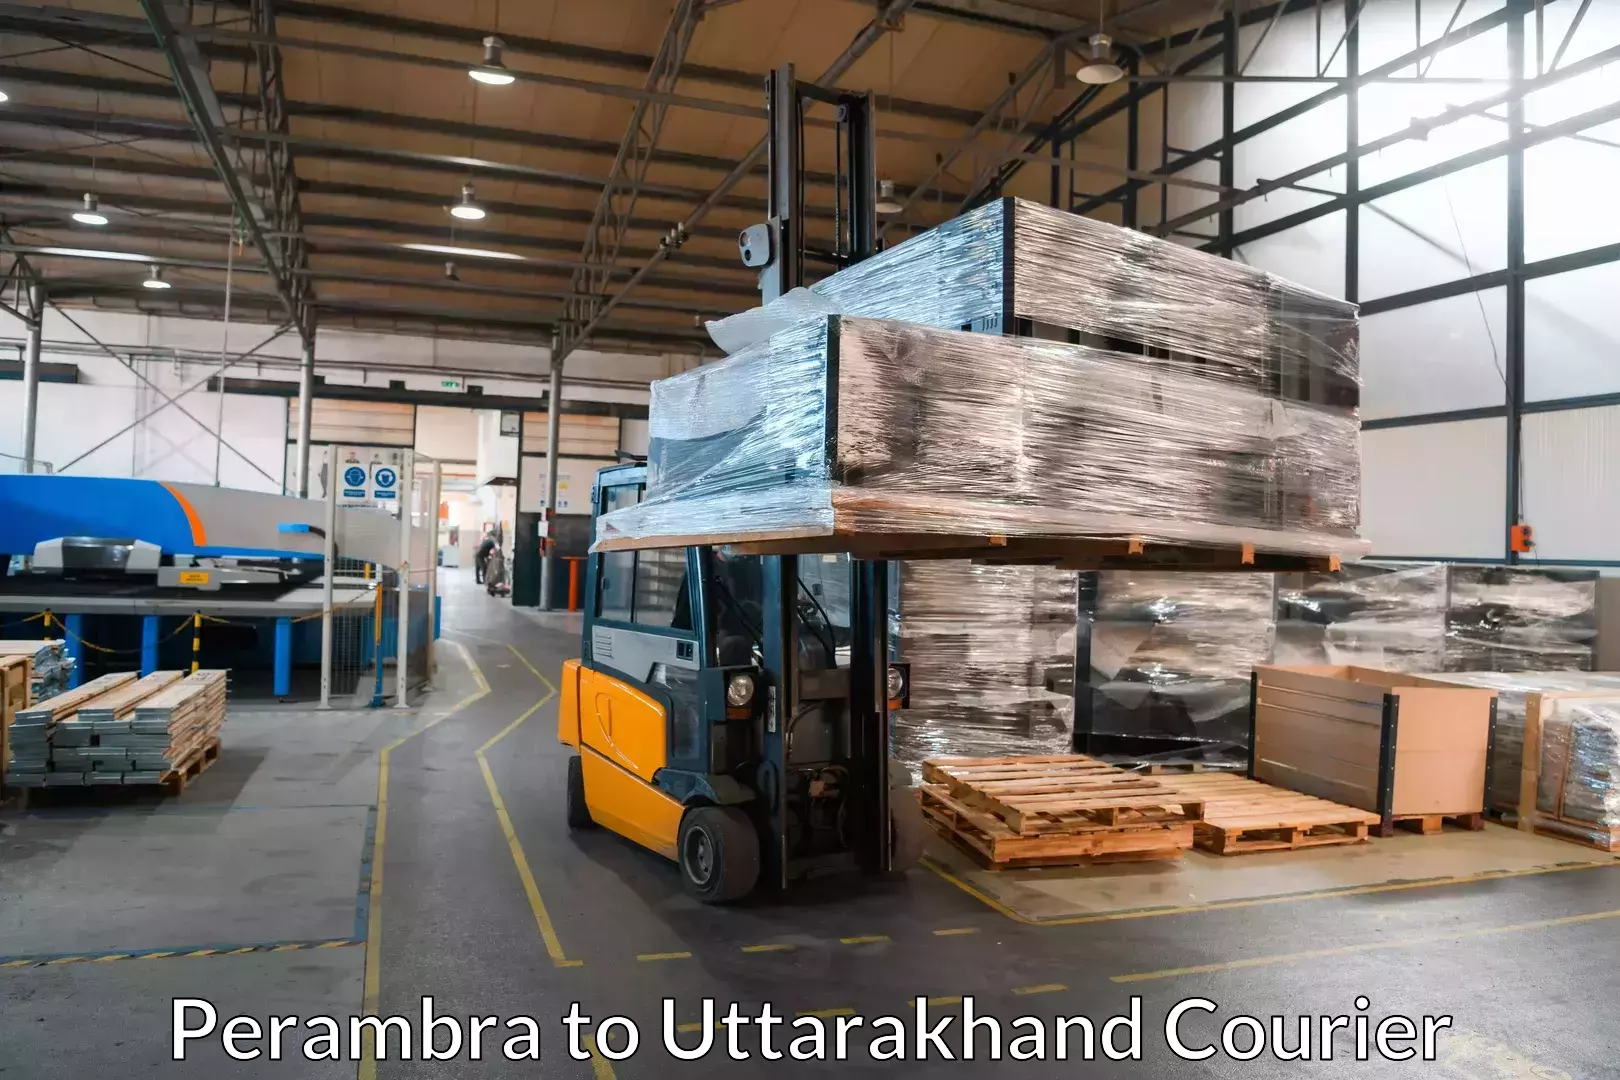 Furniture transport solutions Perambra to Kashipur